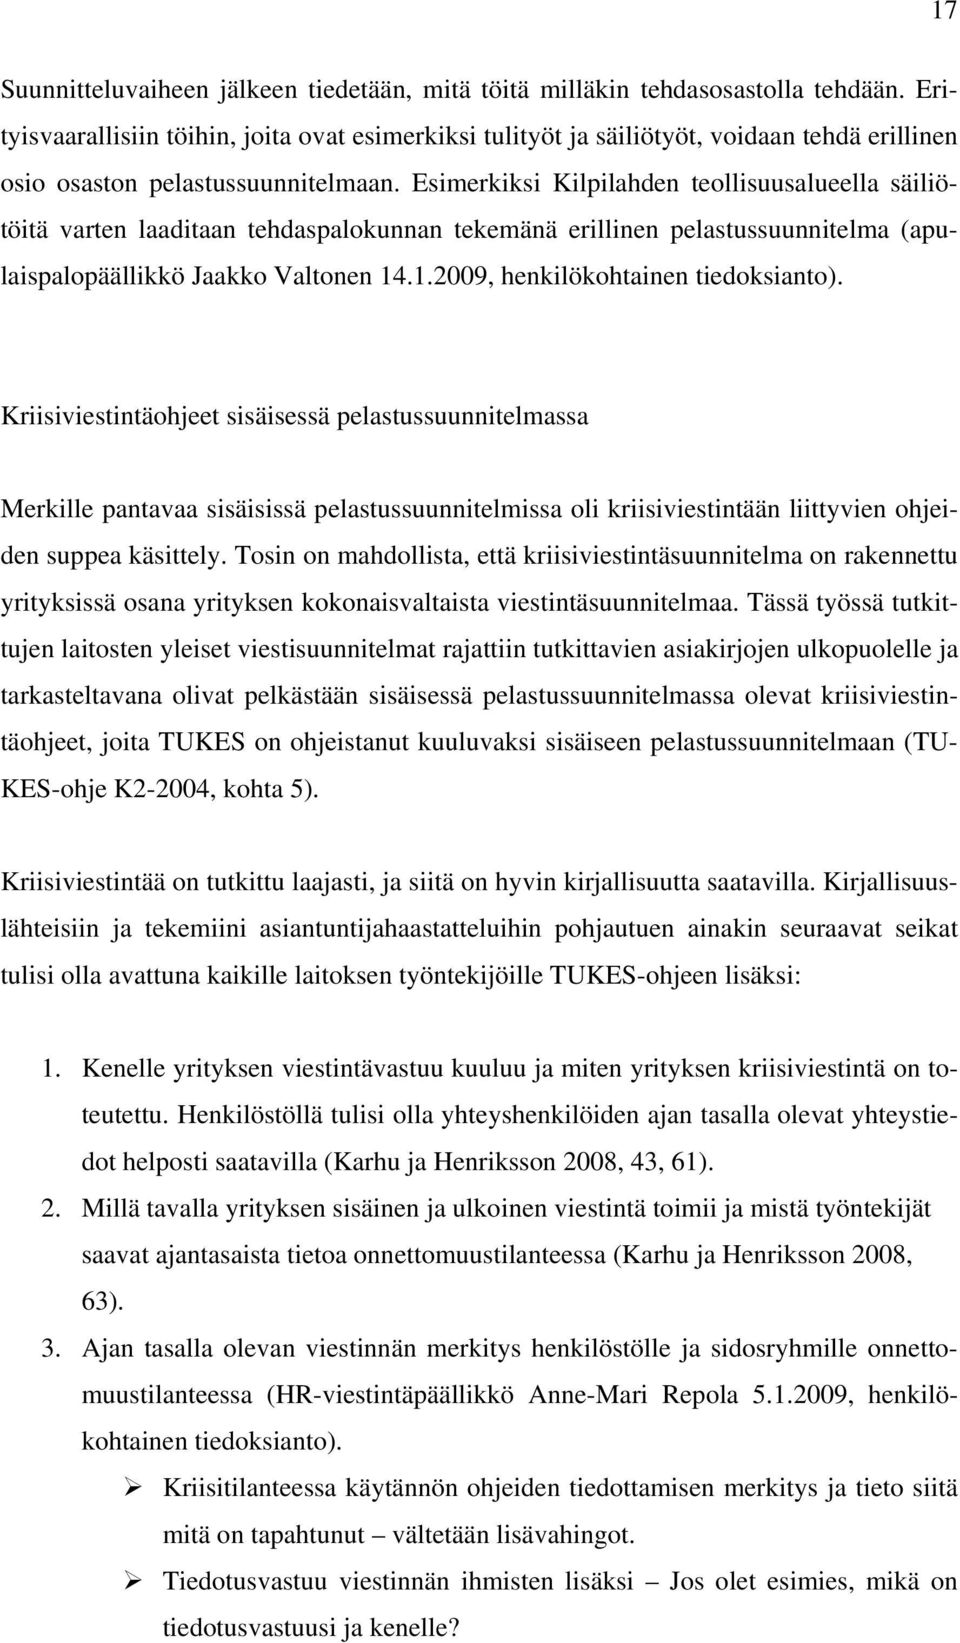 Esimerkiksi Kilpilahden teollisuusalueella säiliötöitä varten laaditaan tehdaspalokunnan tekemänä erillinen pelastussuunnitelma (apulaispalopäällikkö Jaakko Valtonen 14